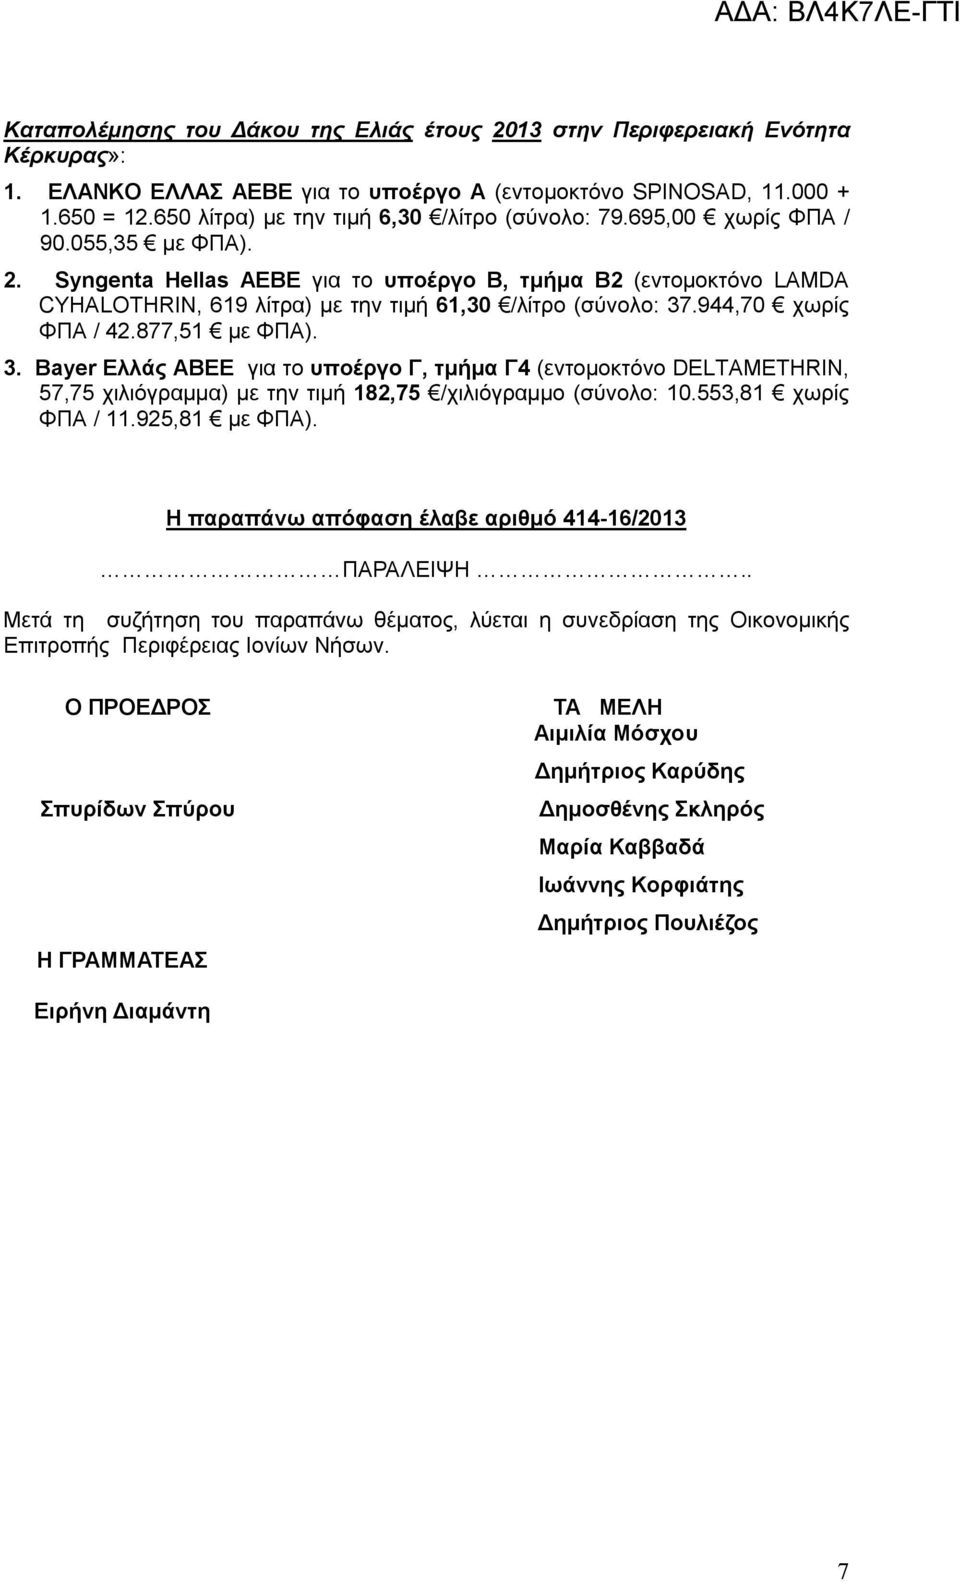 Syngenta Hellas ΑΕΒΕ για το υποέργο Β, τμήμα Β2 (εντομοκτόνο LAMDA CYHALOTHRIN, 619 λίτρα) με την τιμή 61,30 /λίτρο (σύνολο: 37